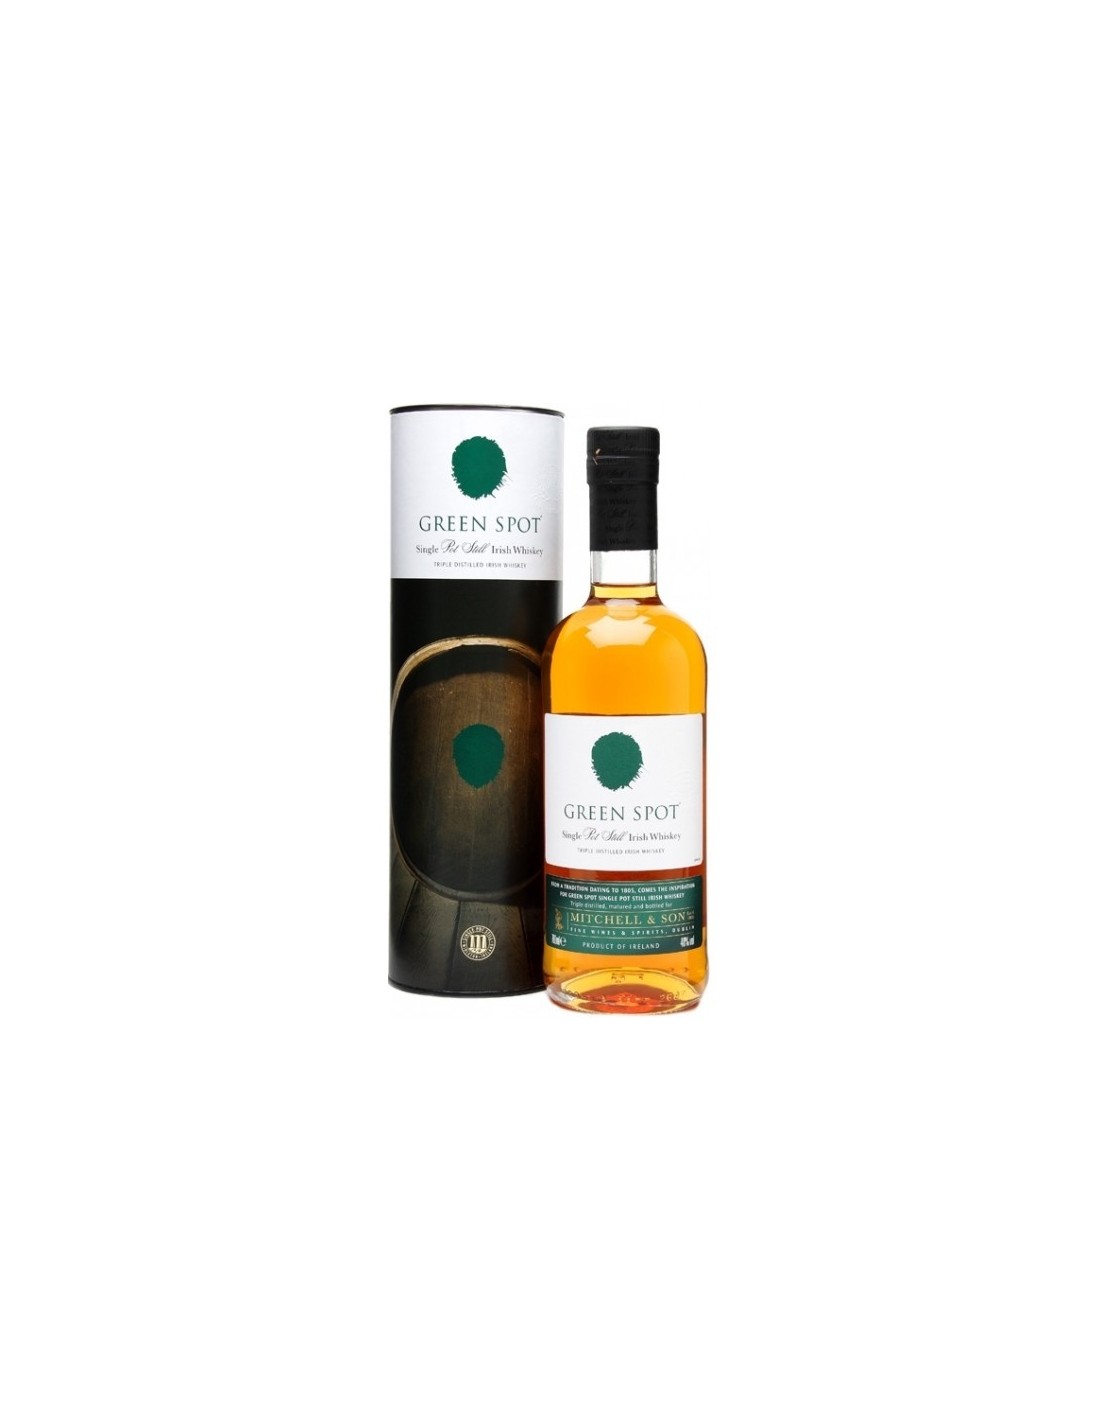 Whisky Green Spot Pot Still, 0.7L, 40% alc., Irlanda alcooldiscount.ro